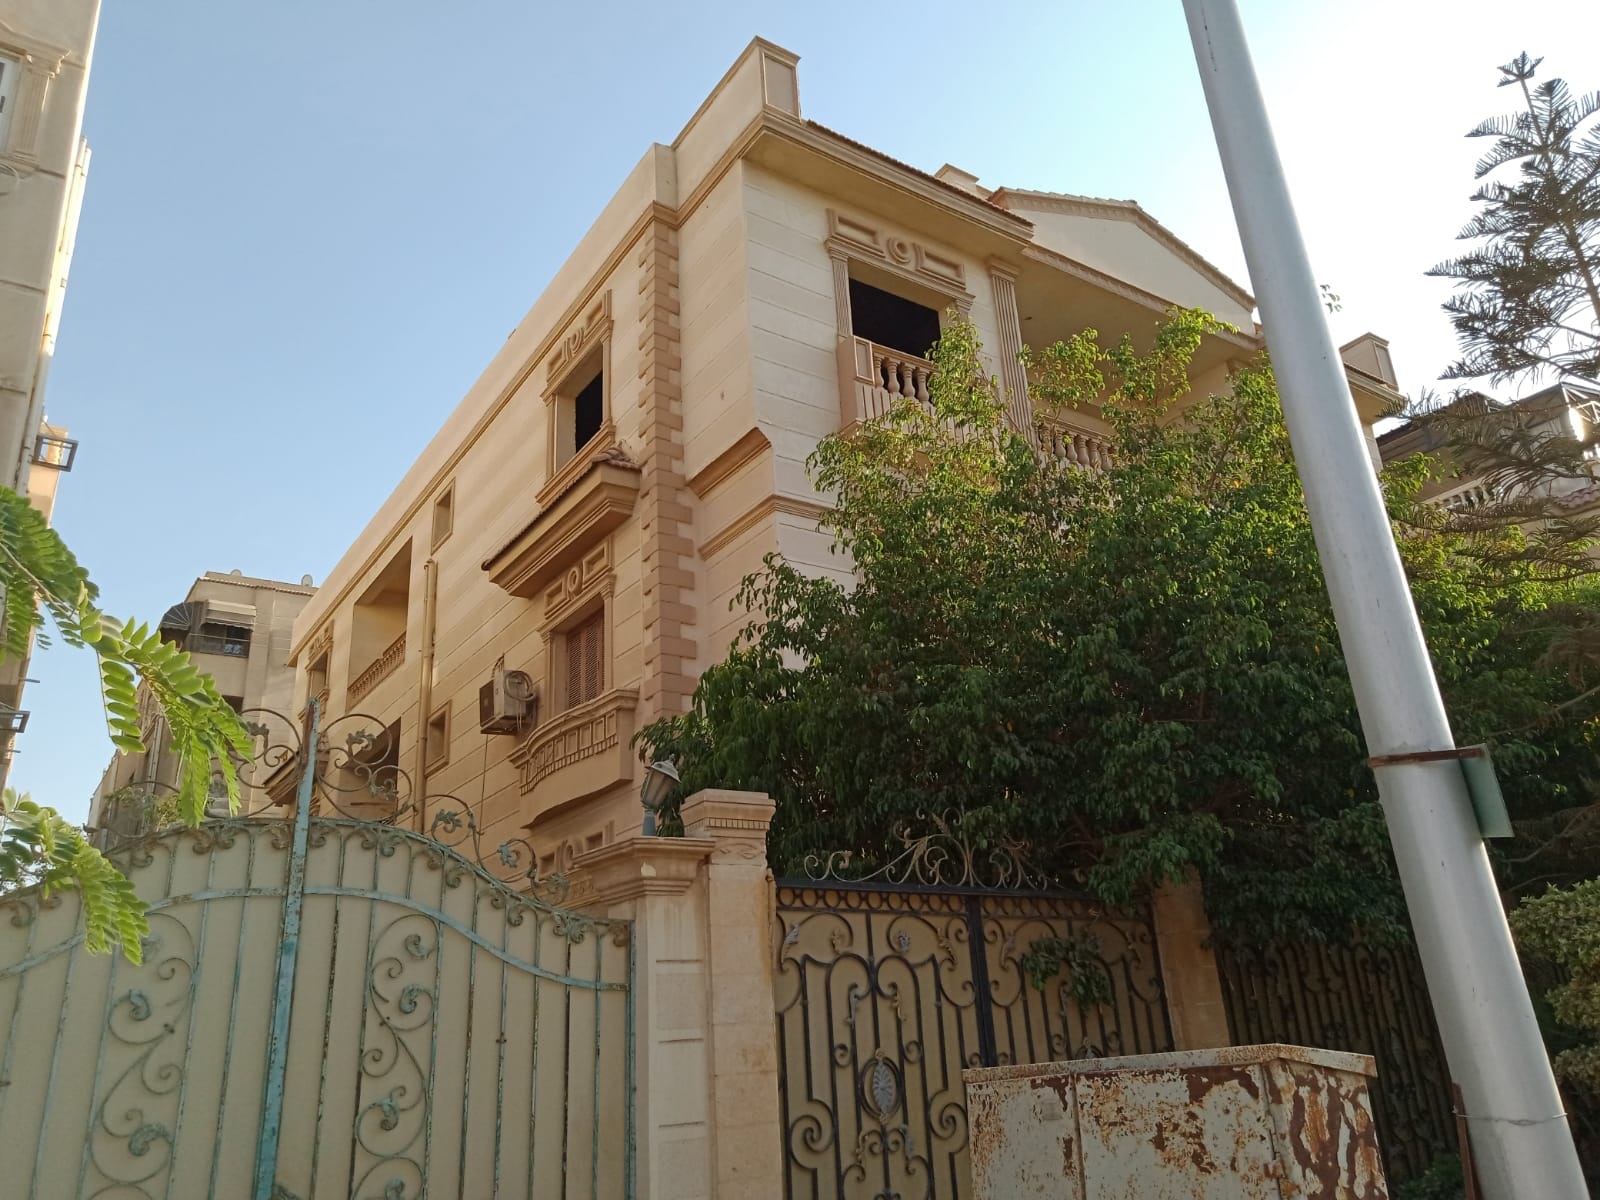 Standalone Villa 1020 M2 For Sale At El Diplomaseen New Cairo فيلا مستقلة 1020 متر للبيع بحي الدبلوماسيين القاهرة الجديدة.jpg